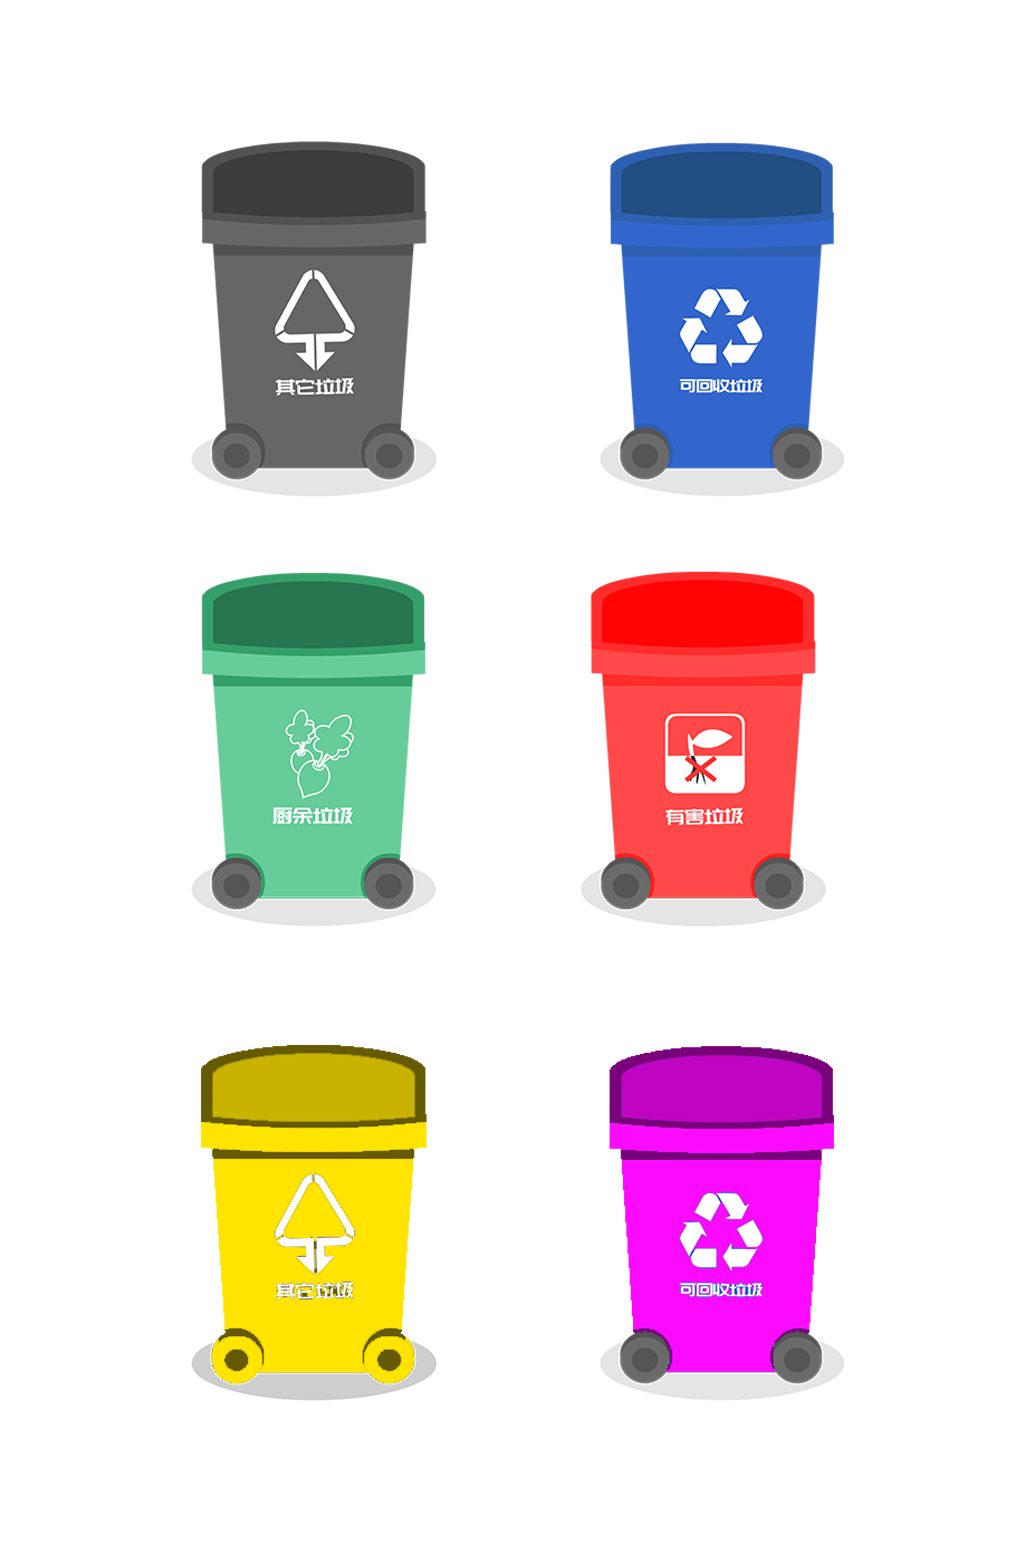 四种垃圾桶标志怎么画图片